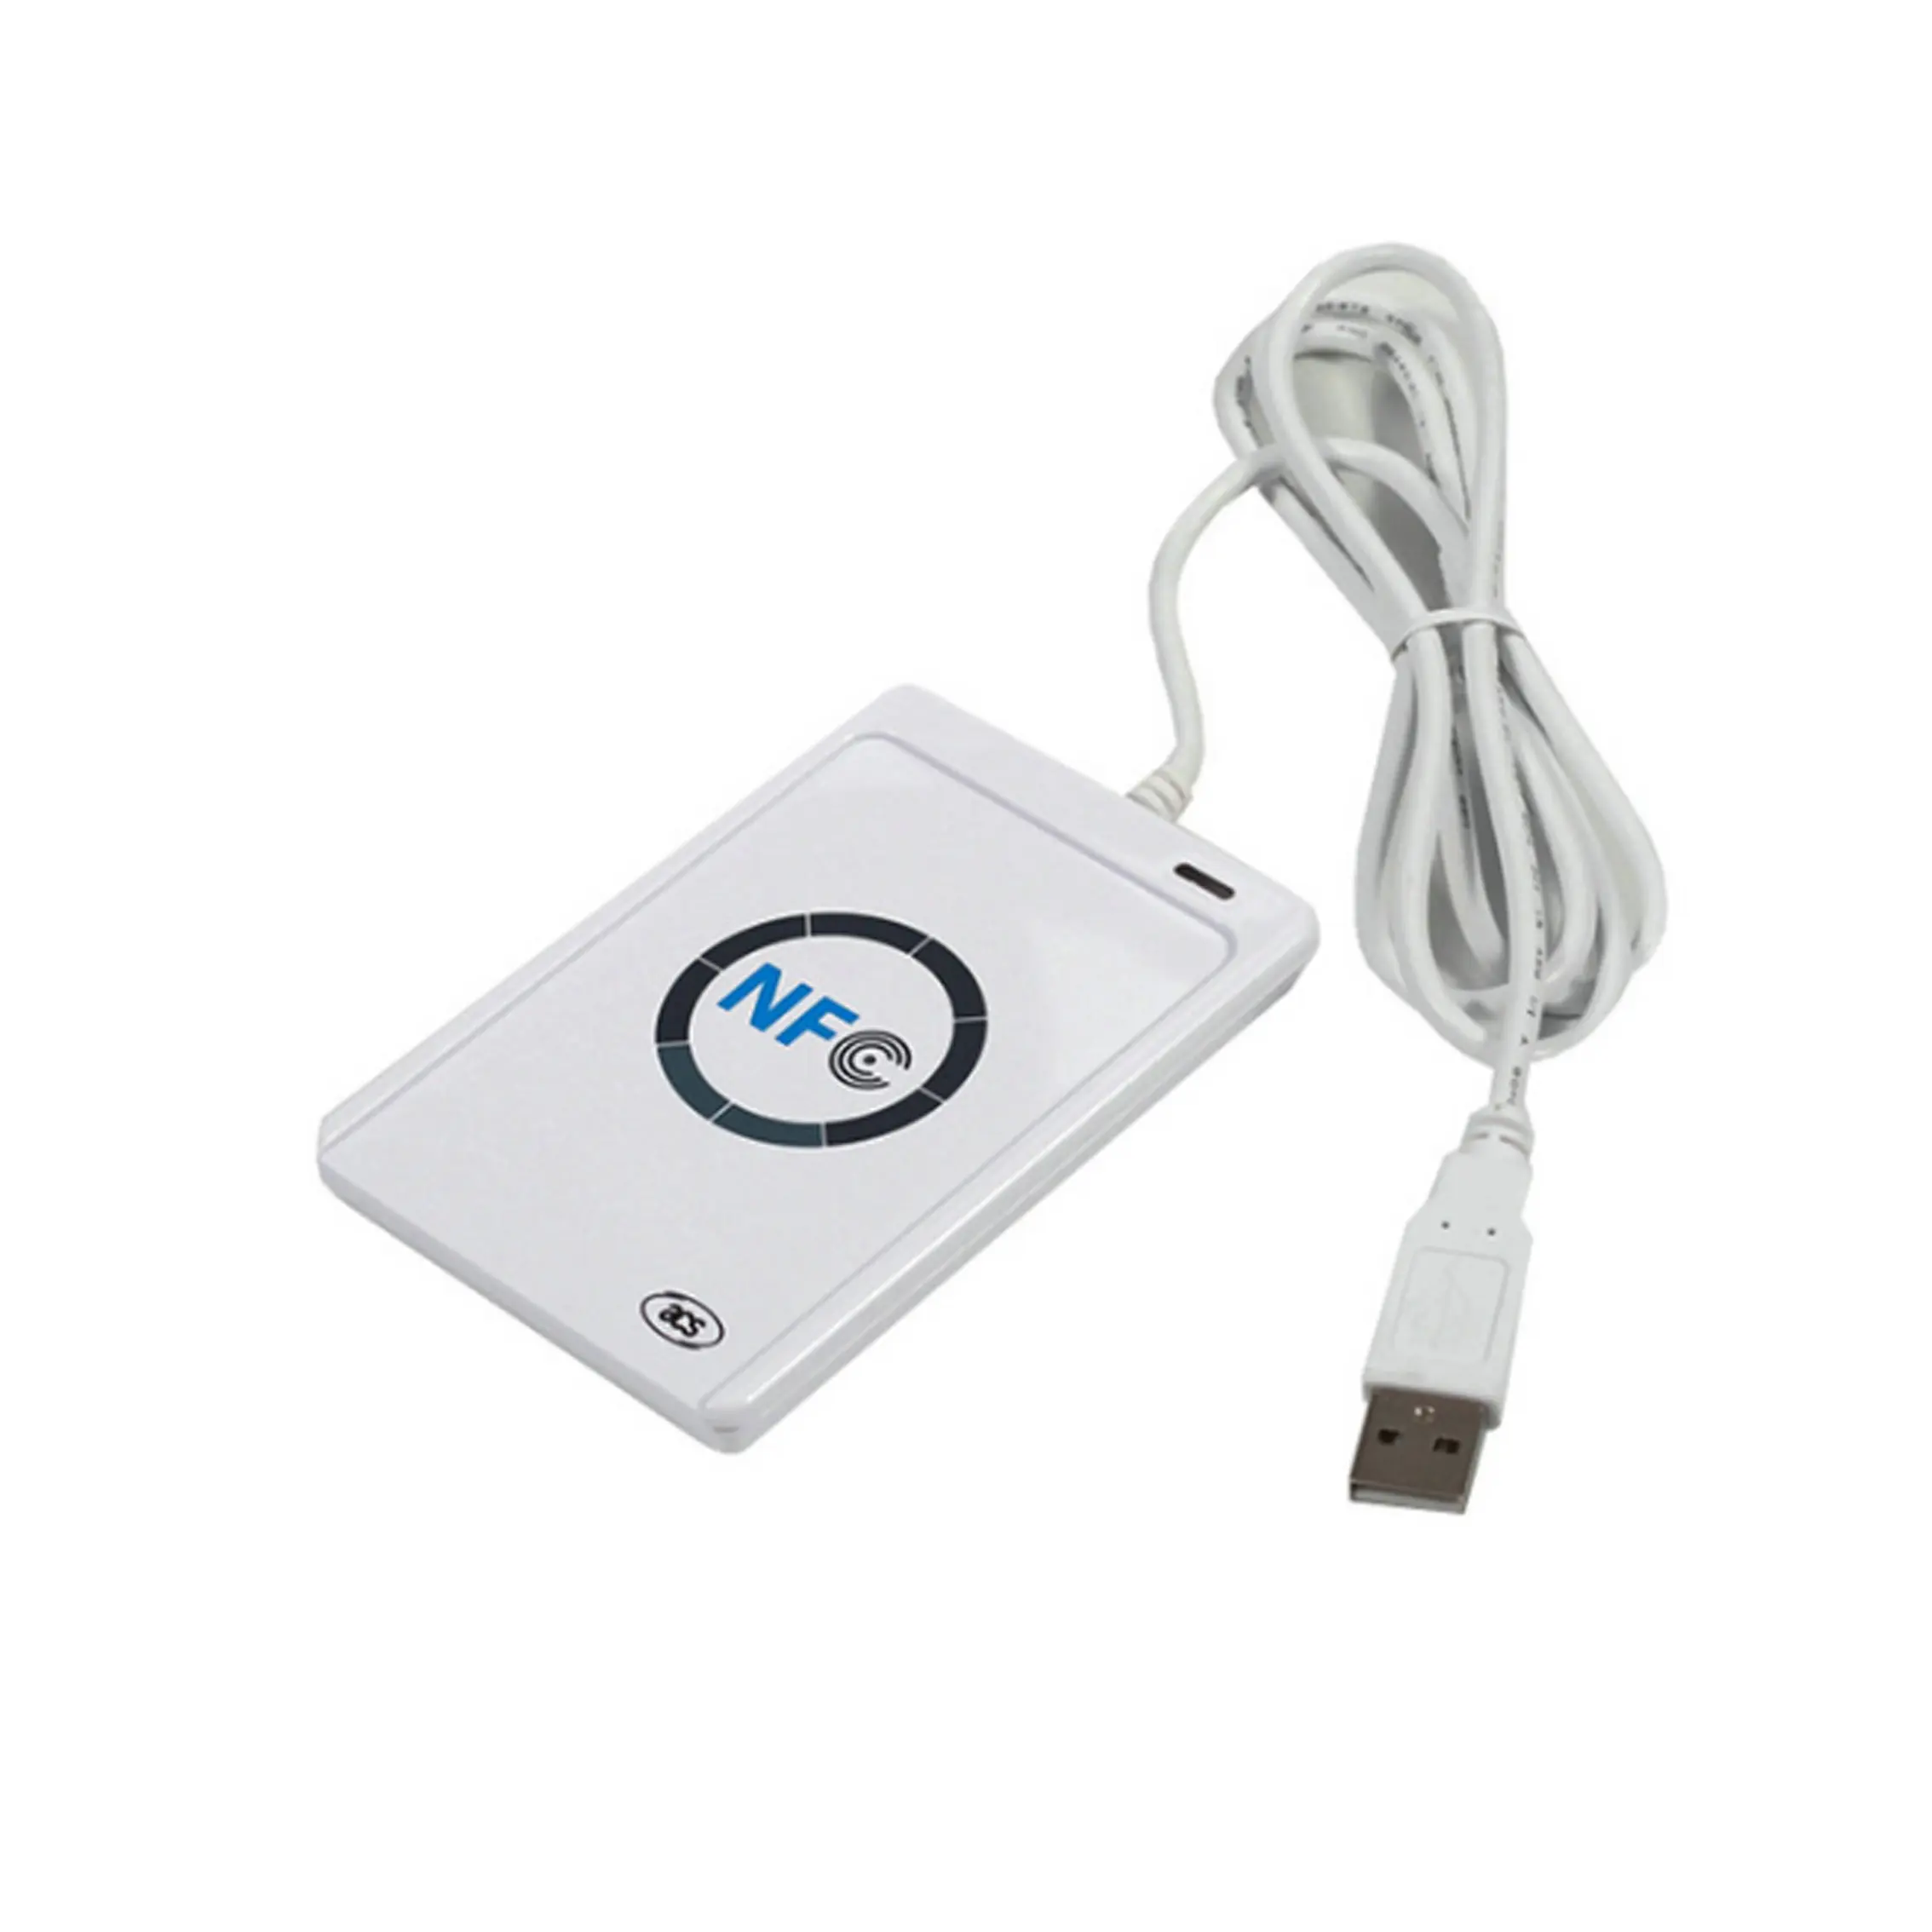 ACR122U USB NFC leitor/gravador NTG213/215/216 NFC RFID Contactless Smart Card Reader Suporte ISO 14443 Tipo A & B cartões